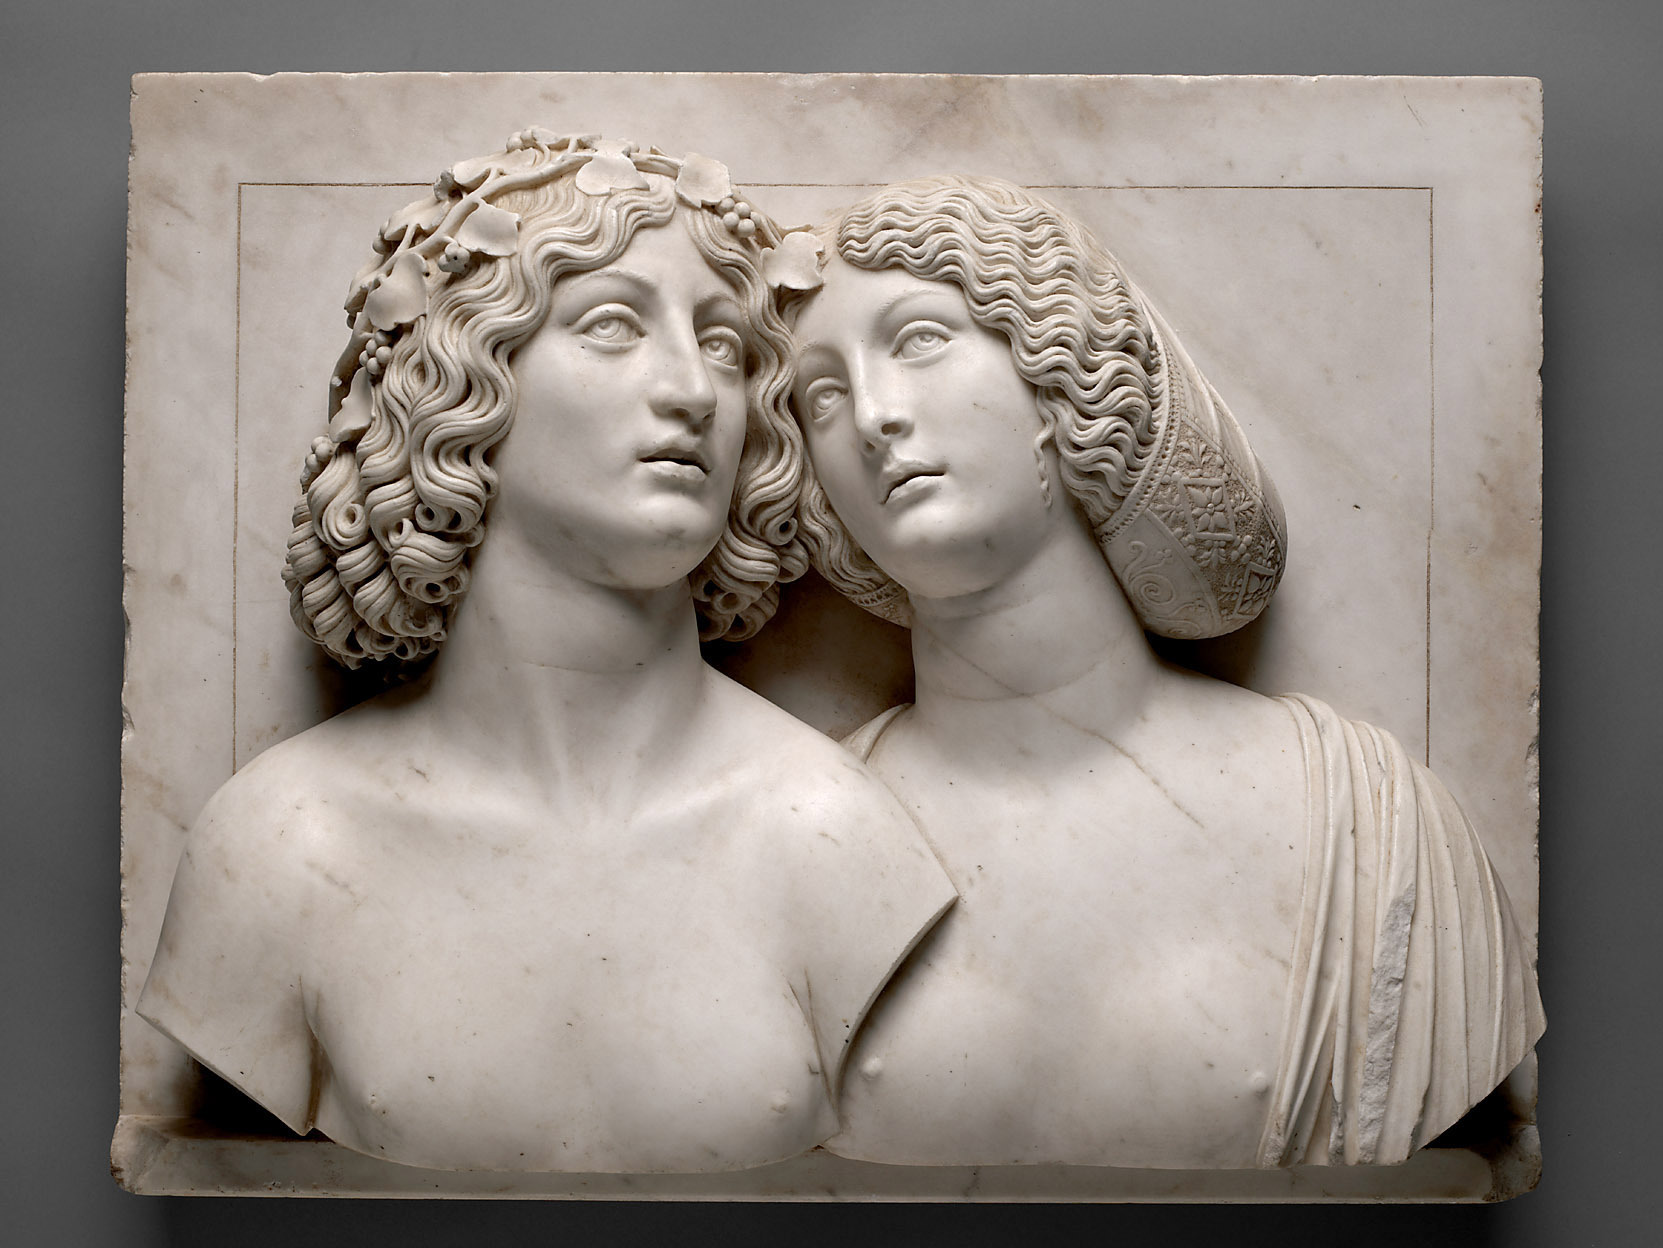 年轻的夫妇 by 图利奥 隆巴多 - 约1505/10年 - 56 x 71 x 20厘米 艺术史博物馆